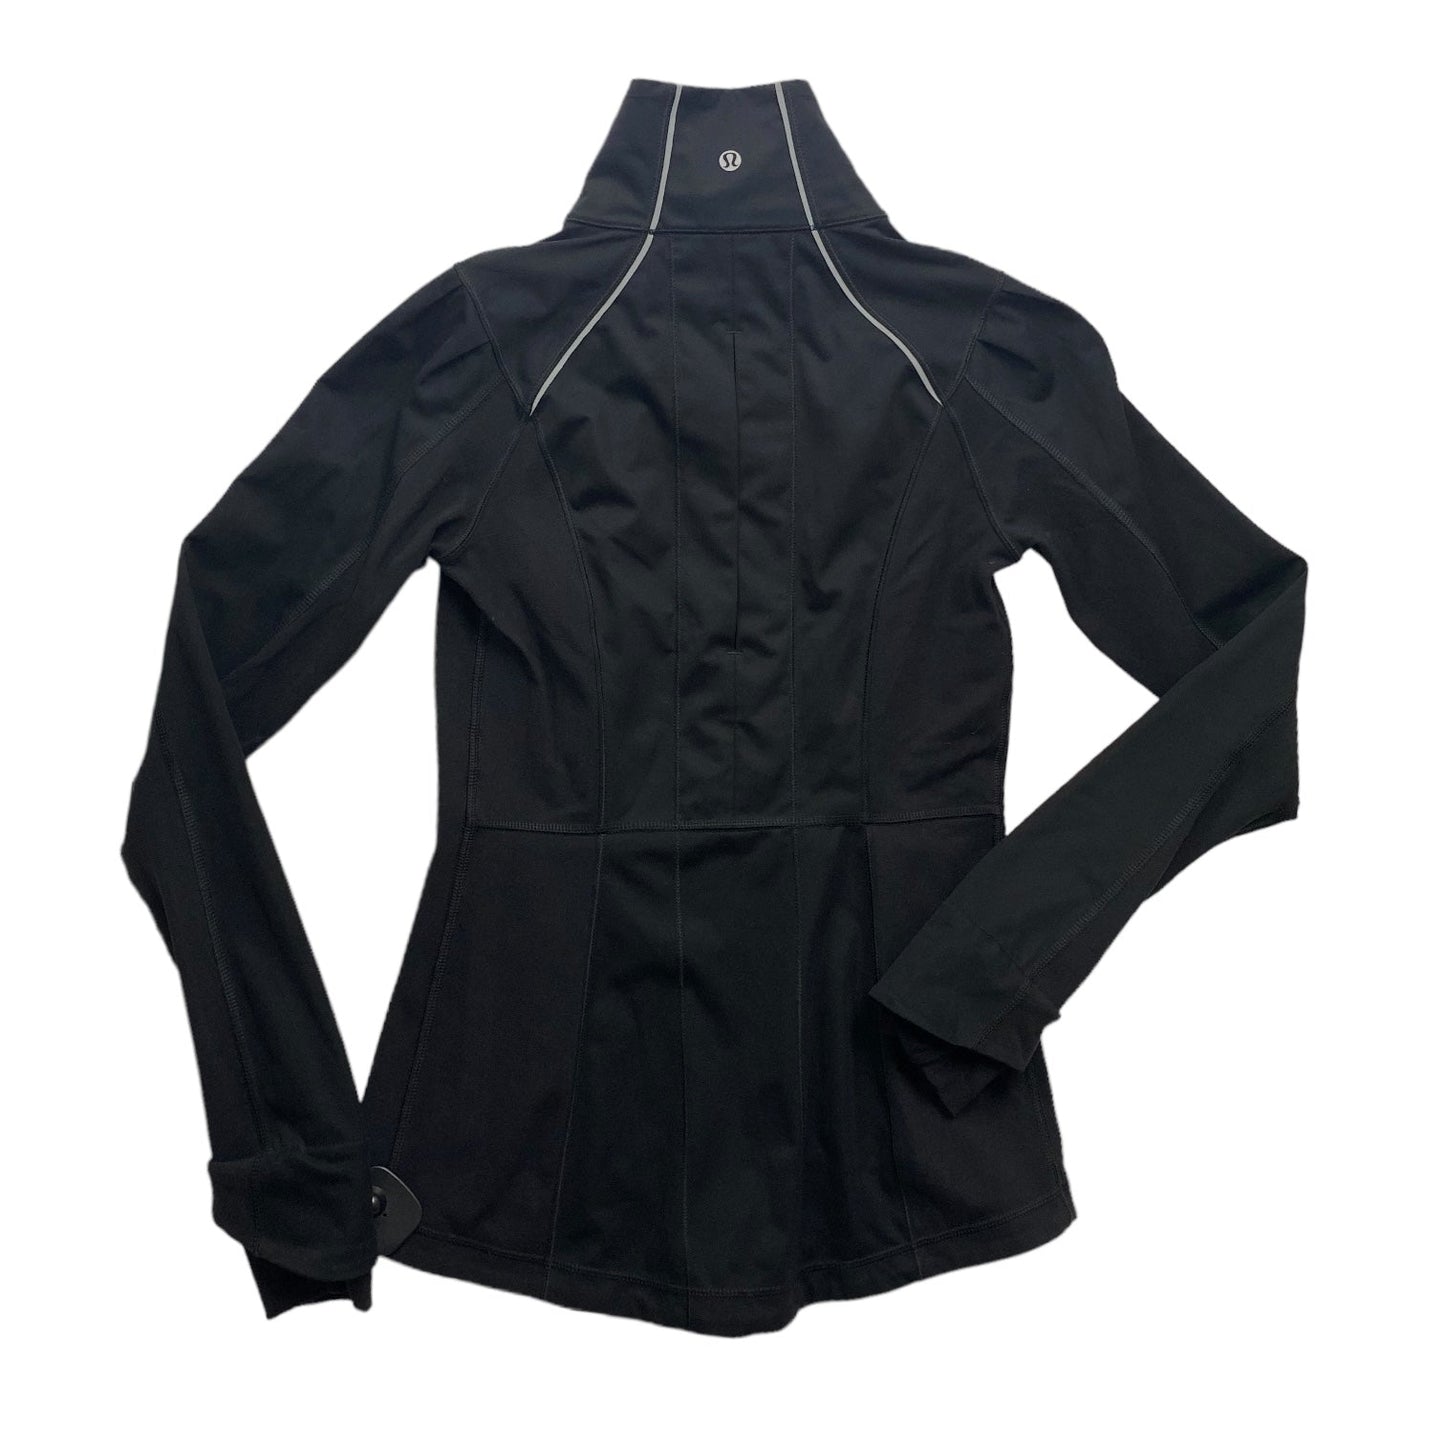 Black Athletic Jacket Lululemon, Size 4